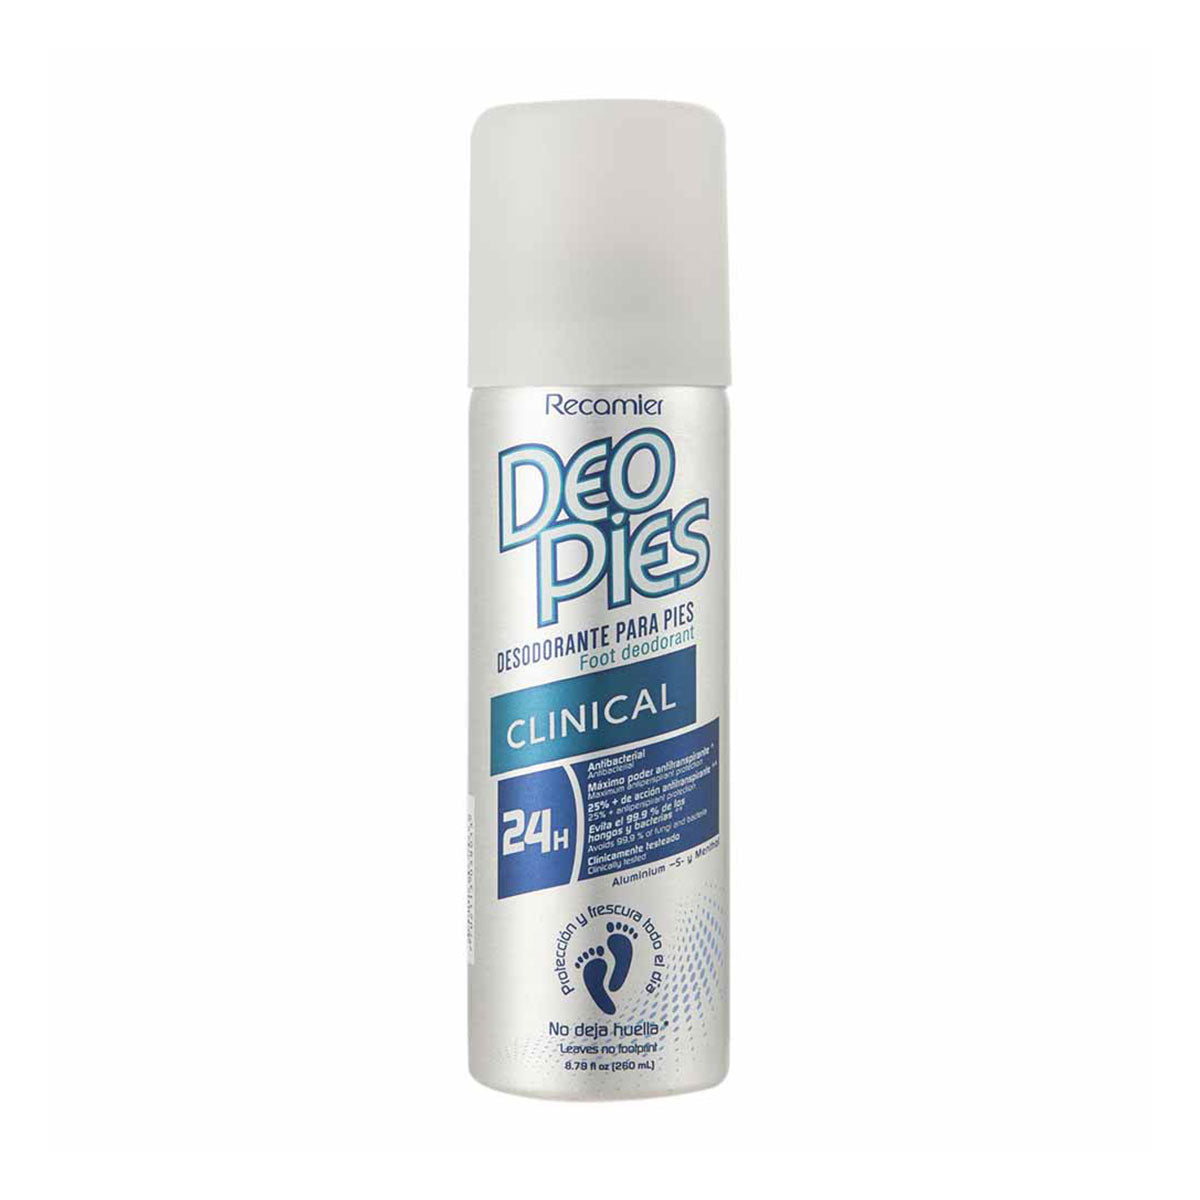 Desodorante en aerosol para pies Deo Pies Clinical 24h Recamier 260 ml